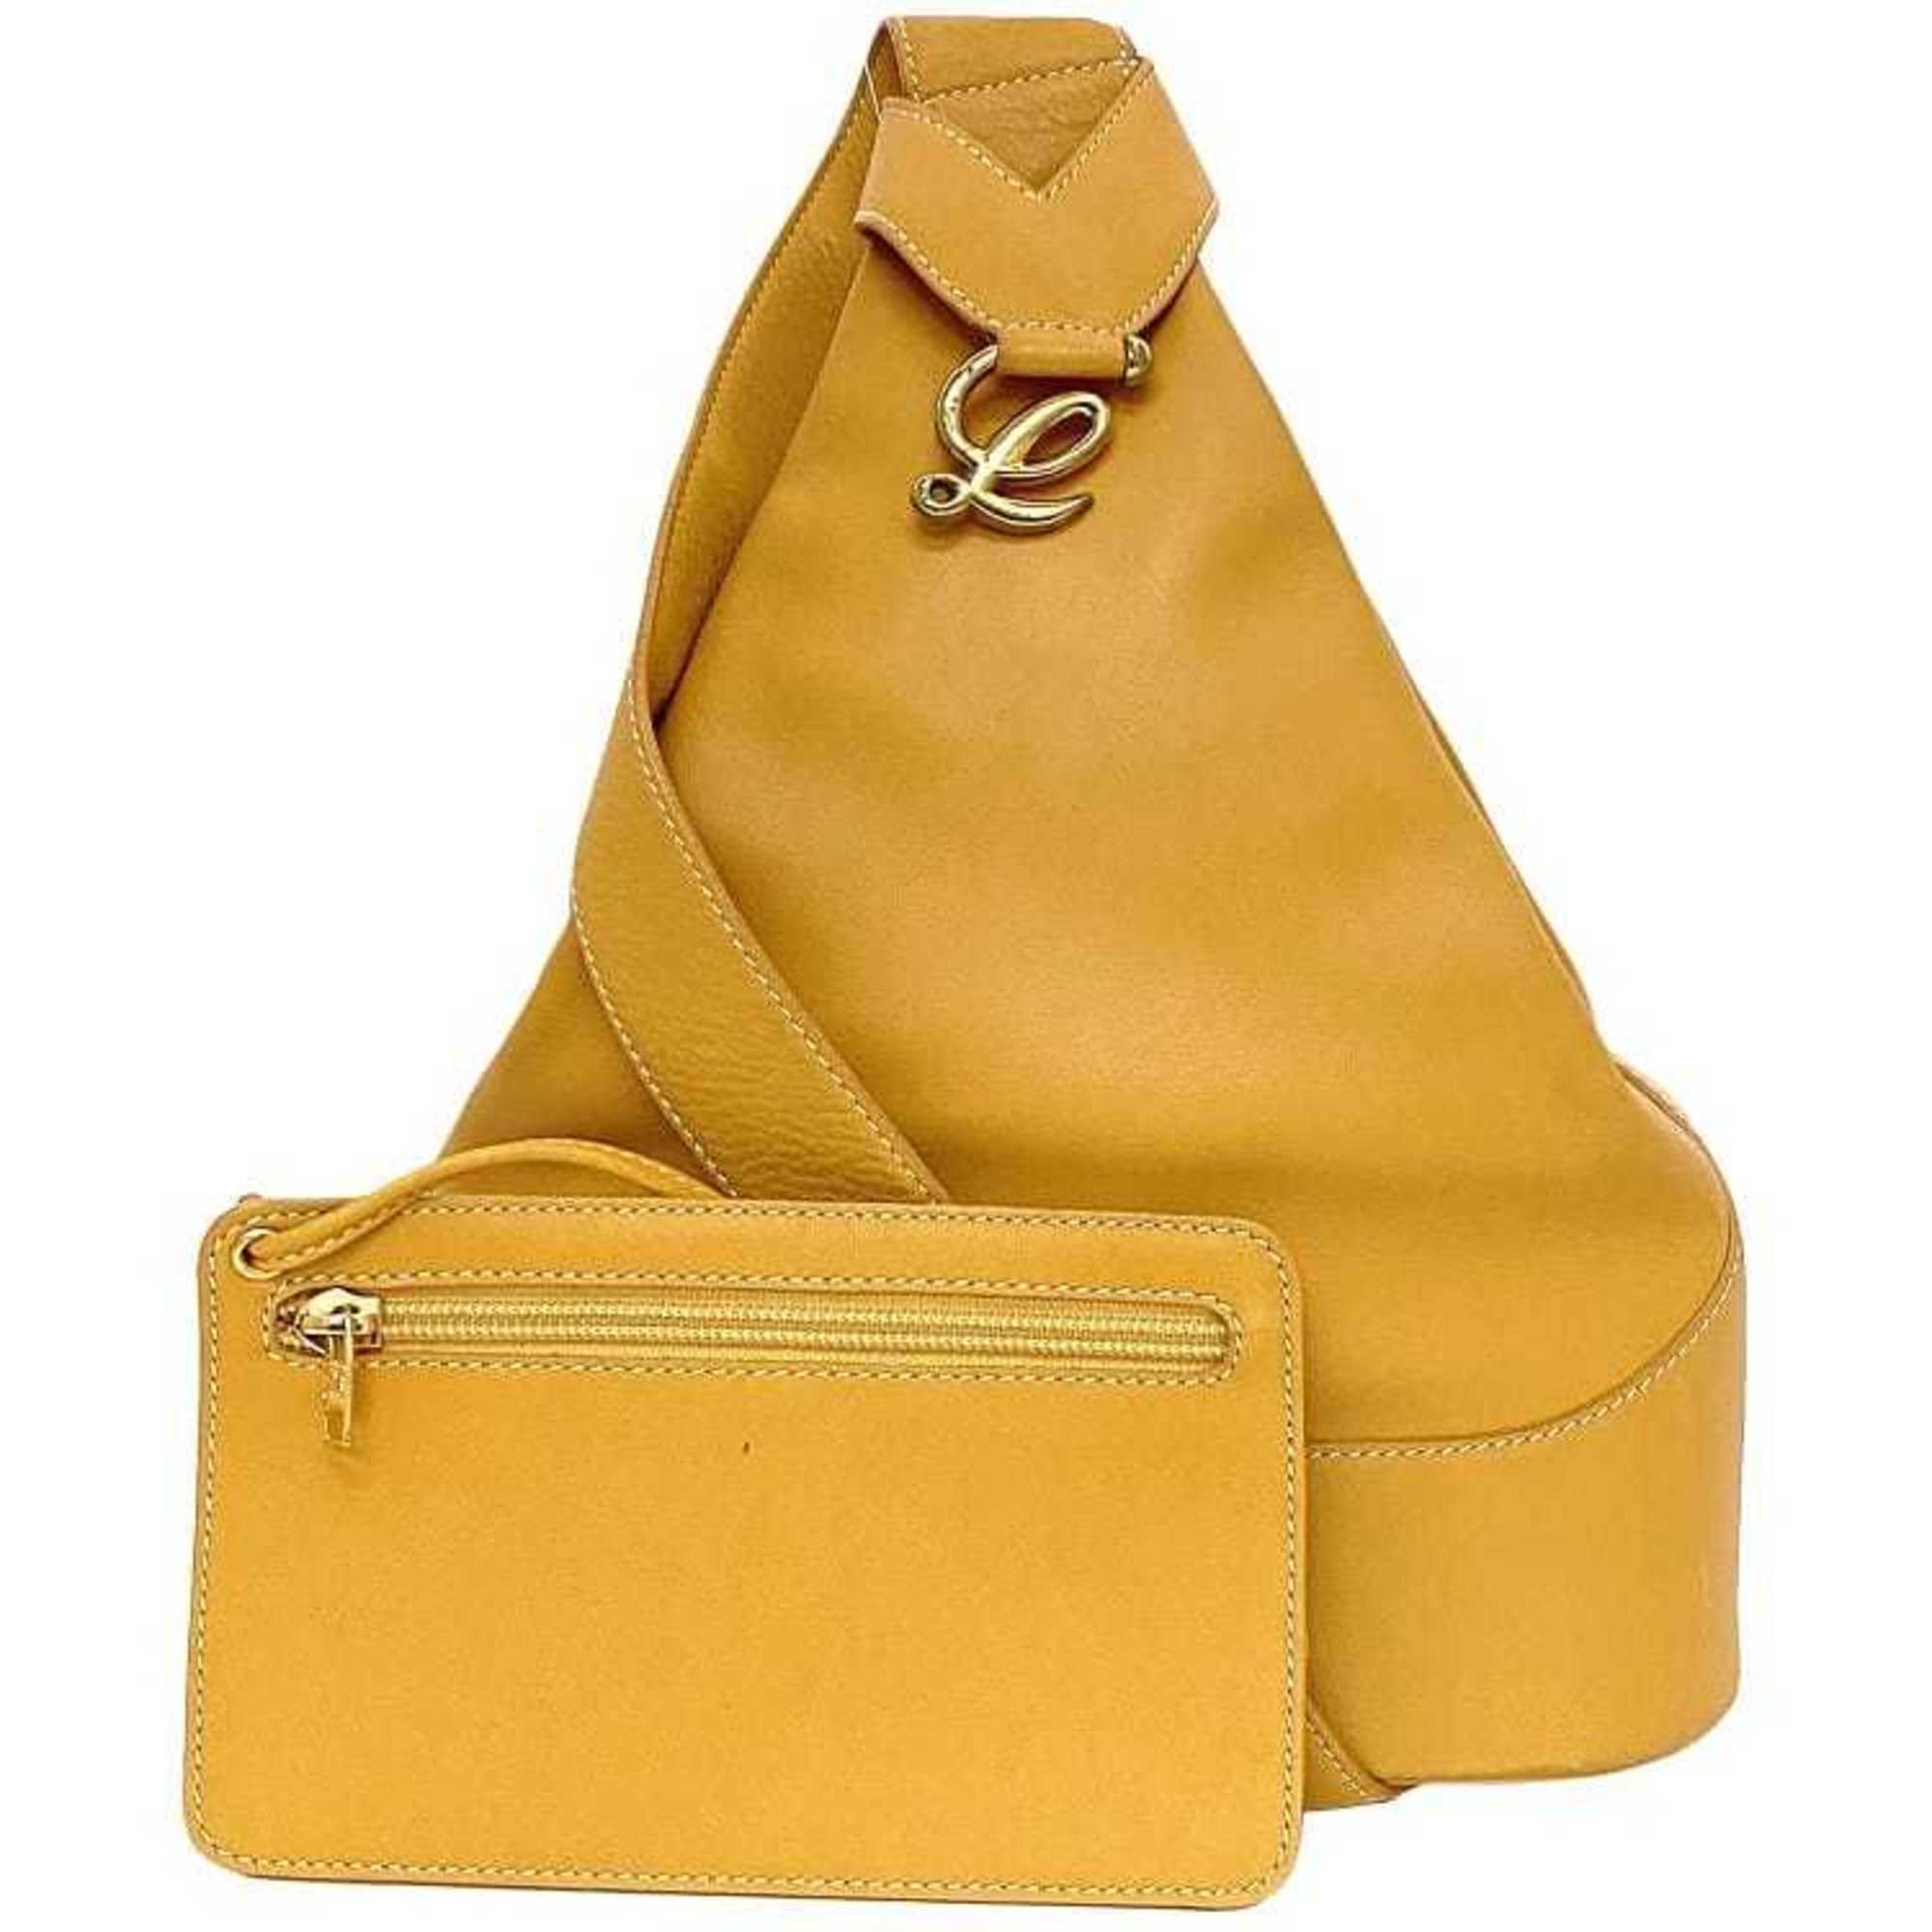 LOEWE Shoulder Bag Camel Orange Anton f-20368 Backpack Leather